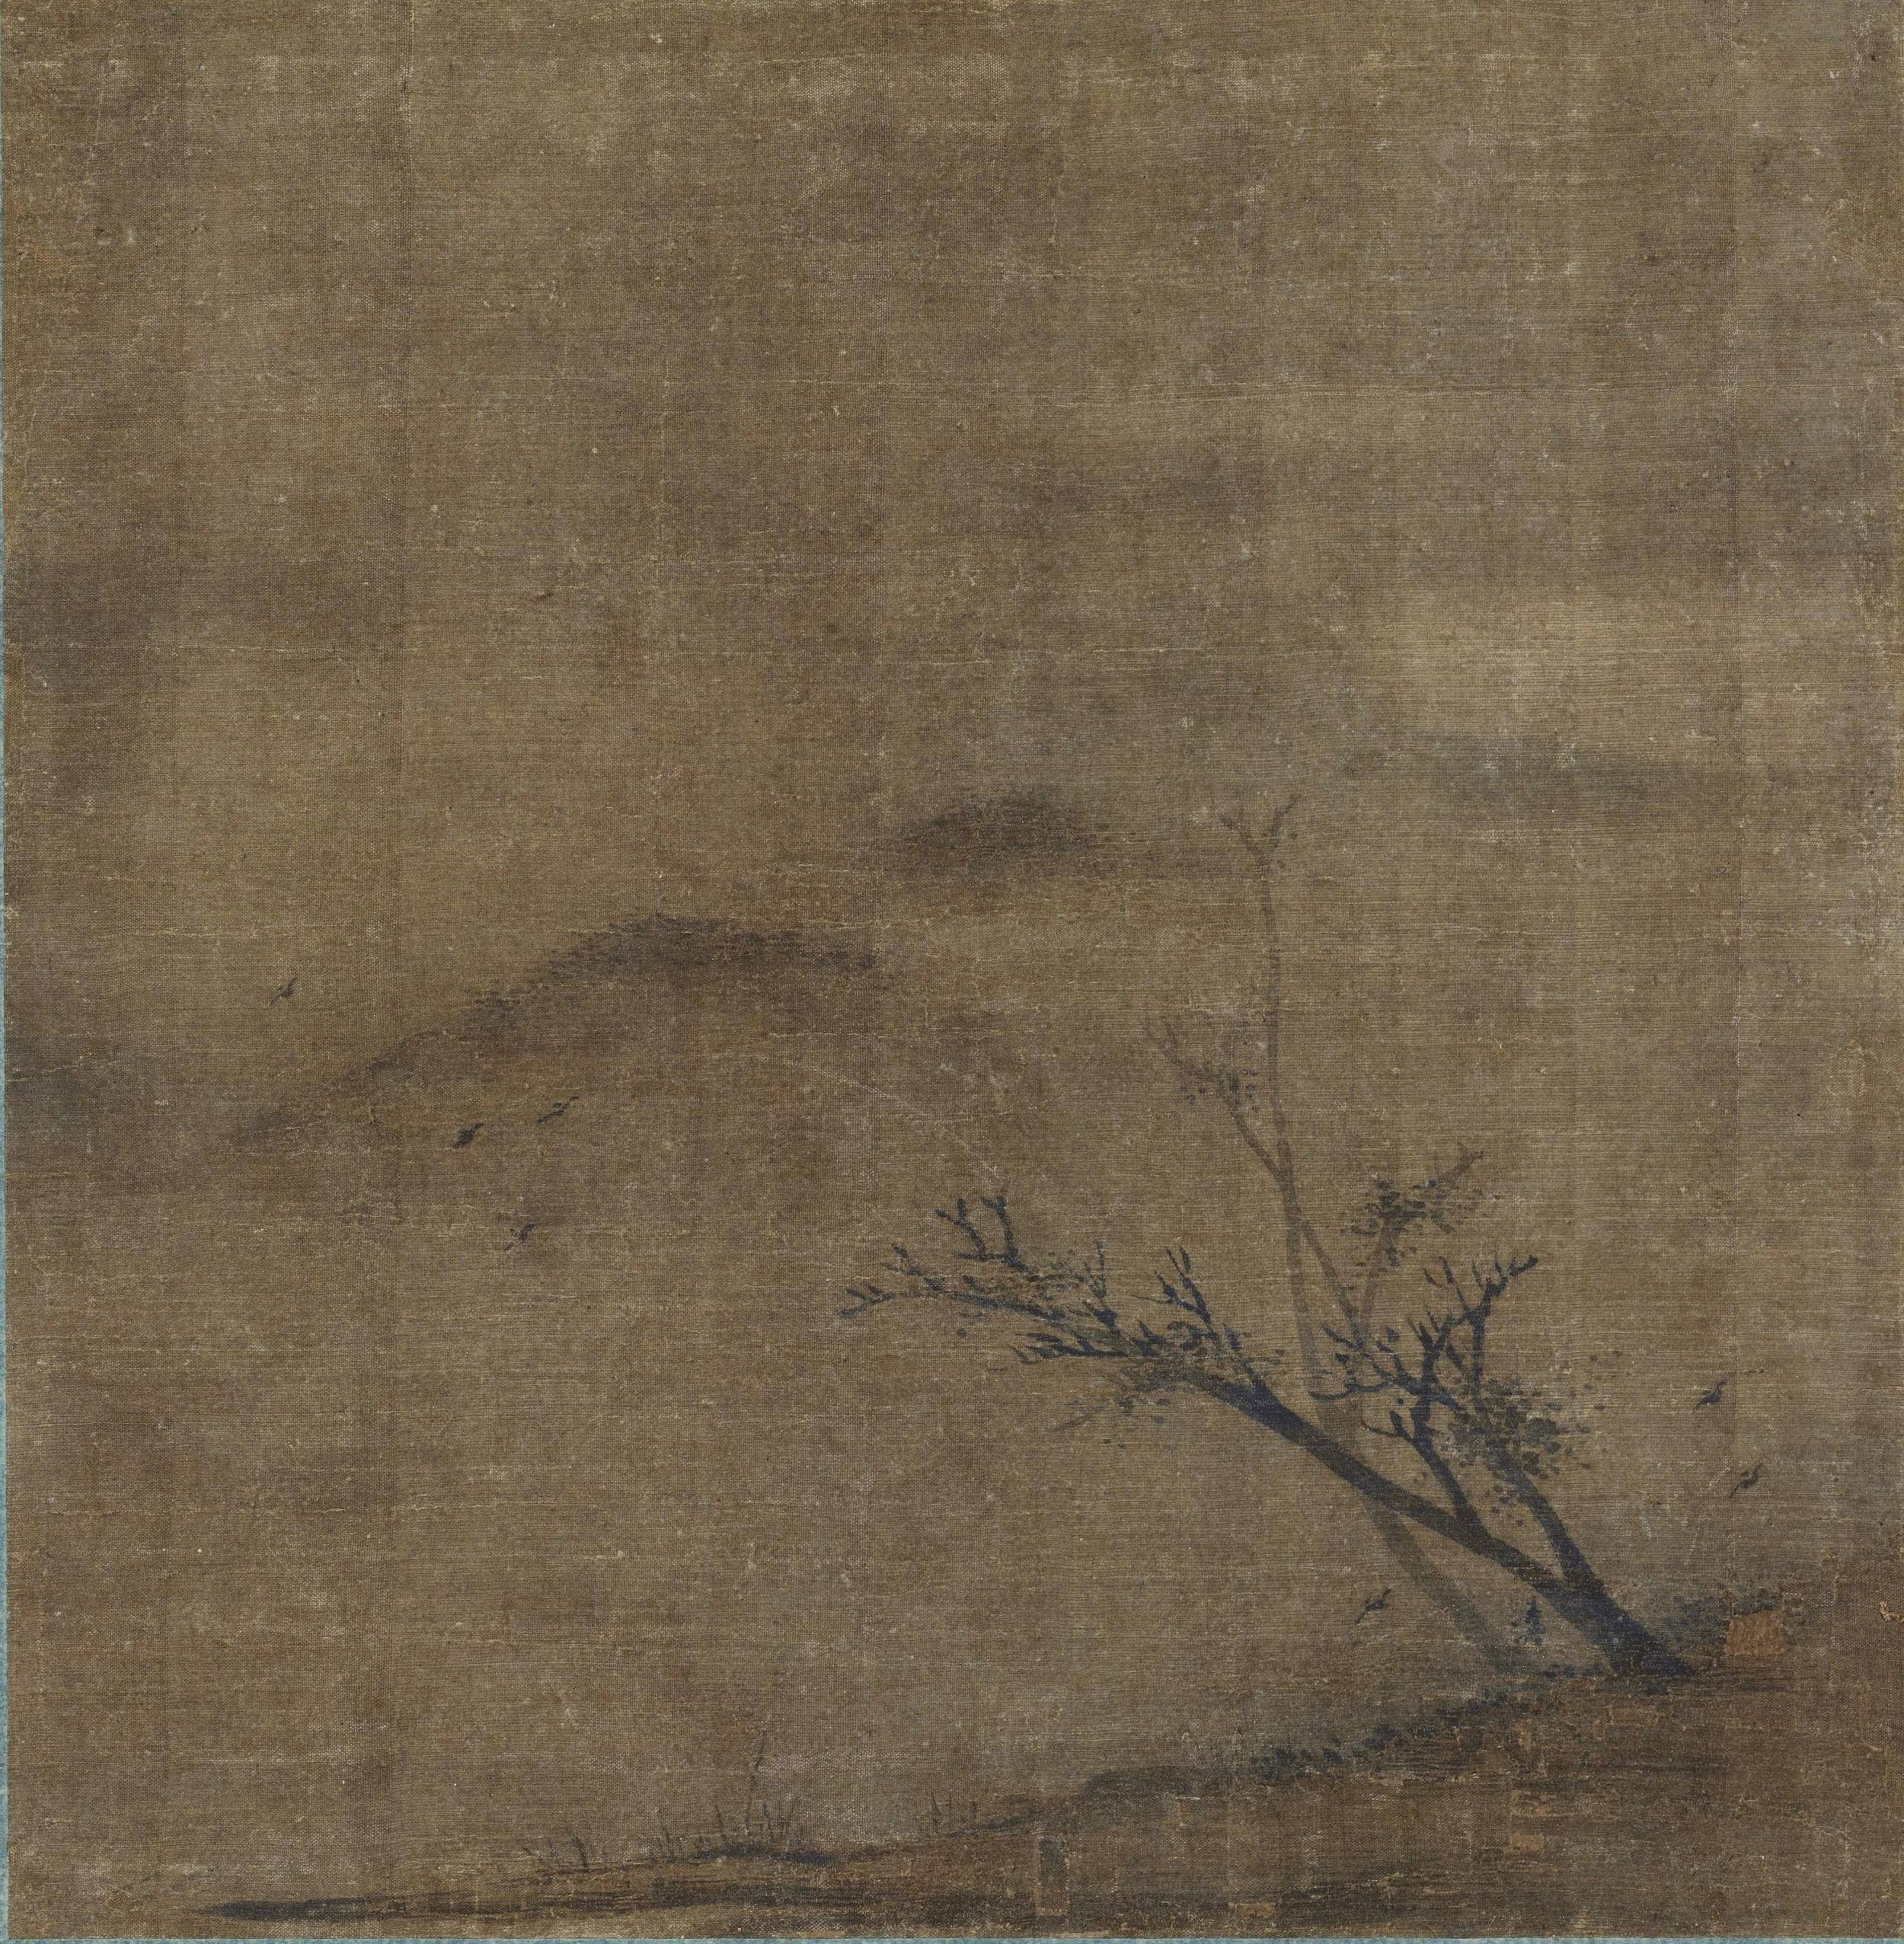 而南宋画院则是以山水画的成就闻名于世,其影响力波及海外,对小日本的